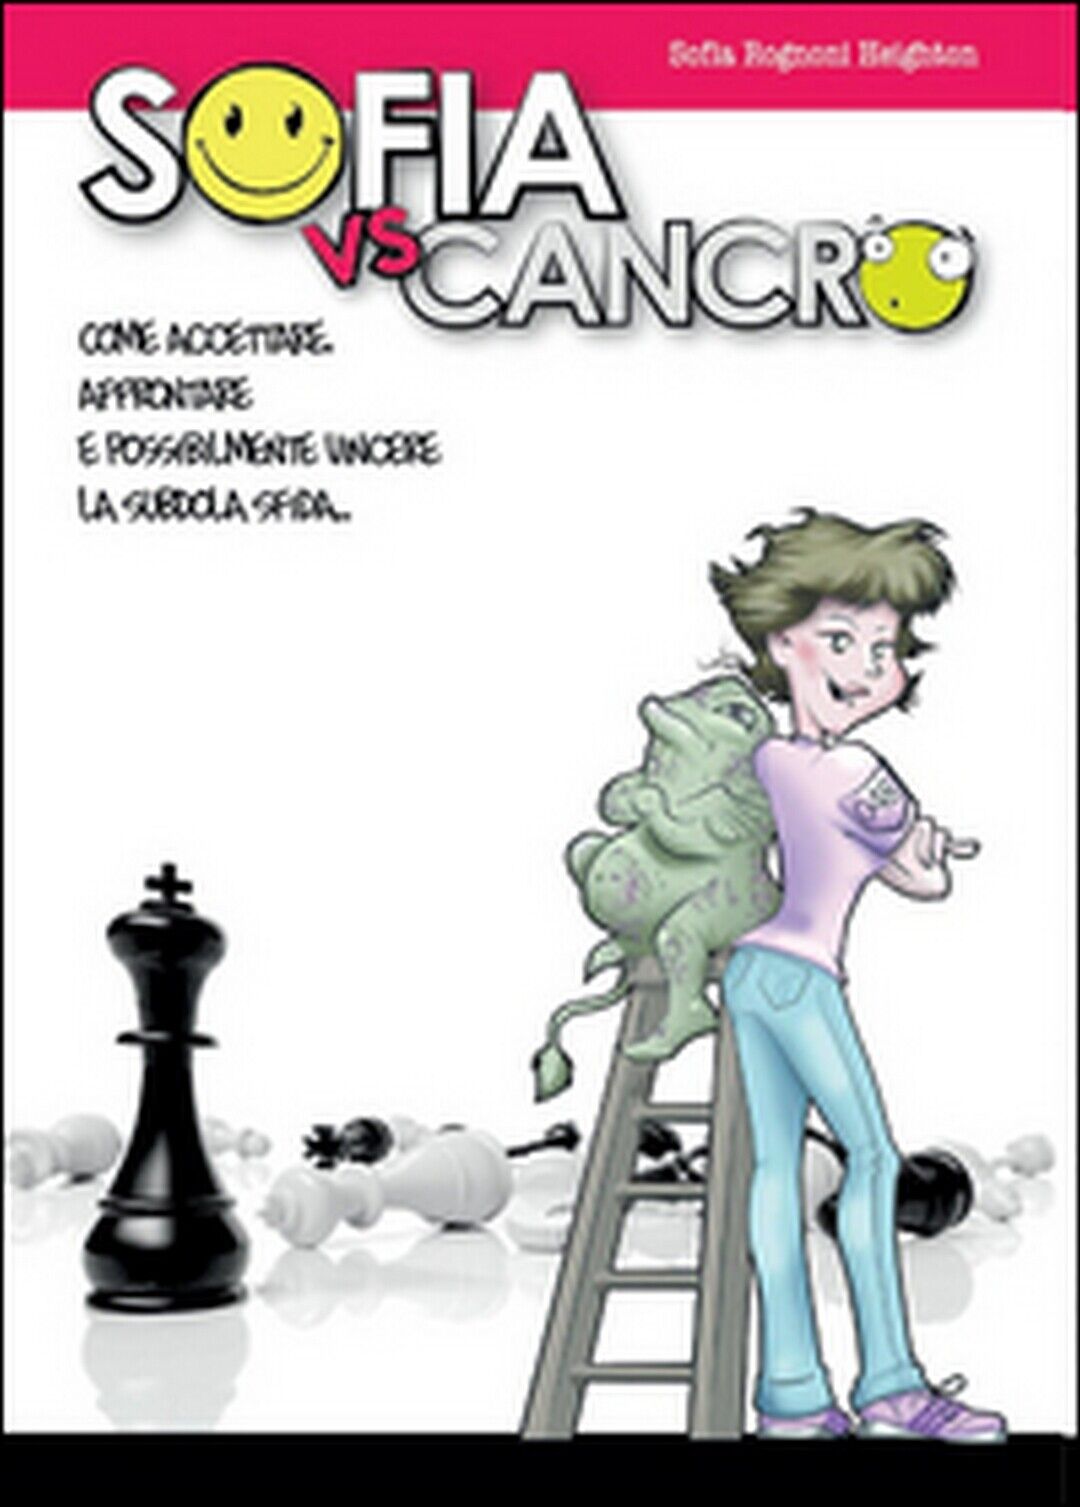 Sofia vs. cancro, di Sofia Rognoni Heighto,  2015,  Youcanprint